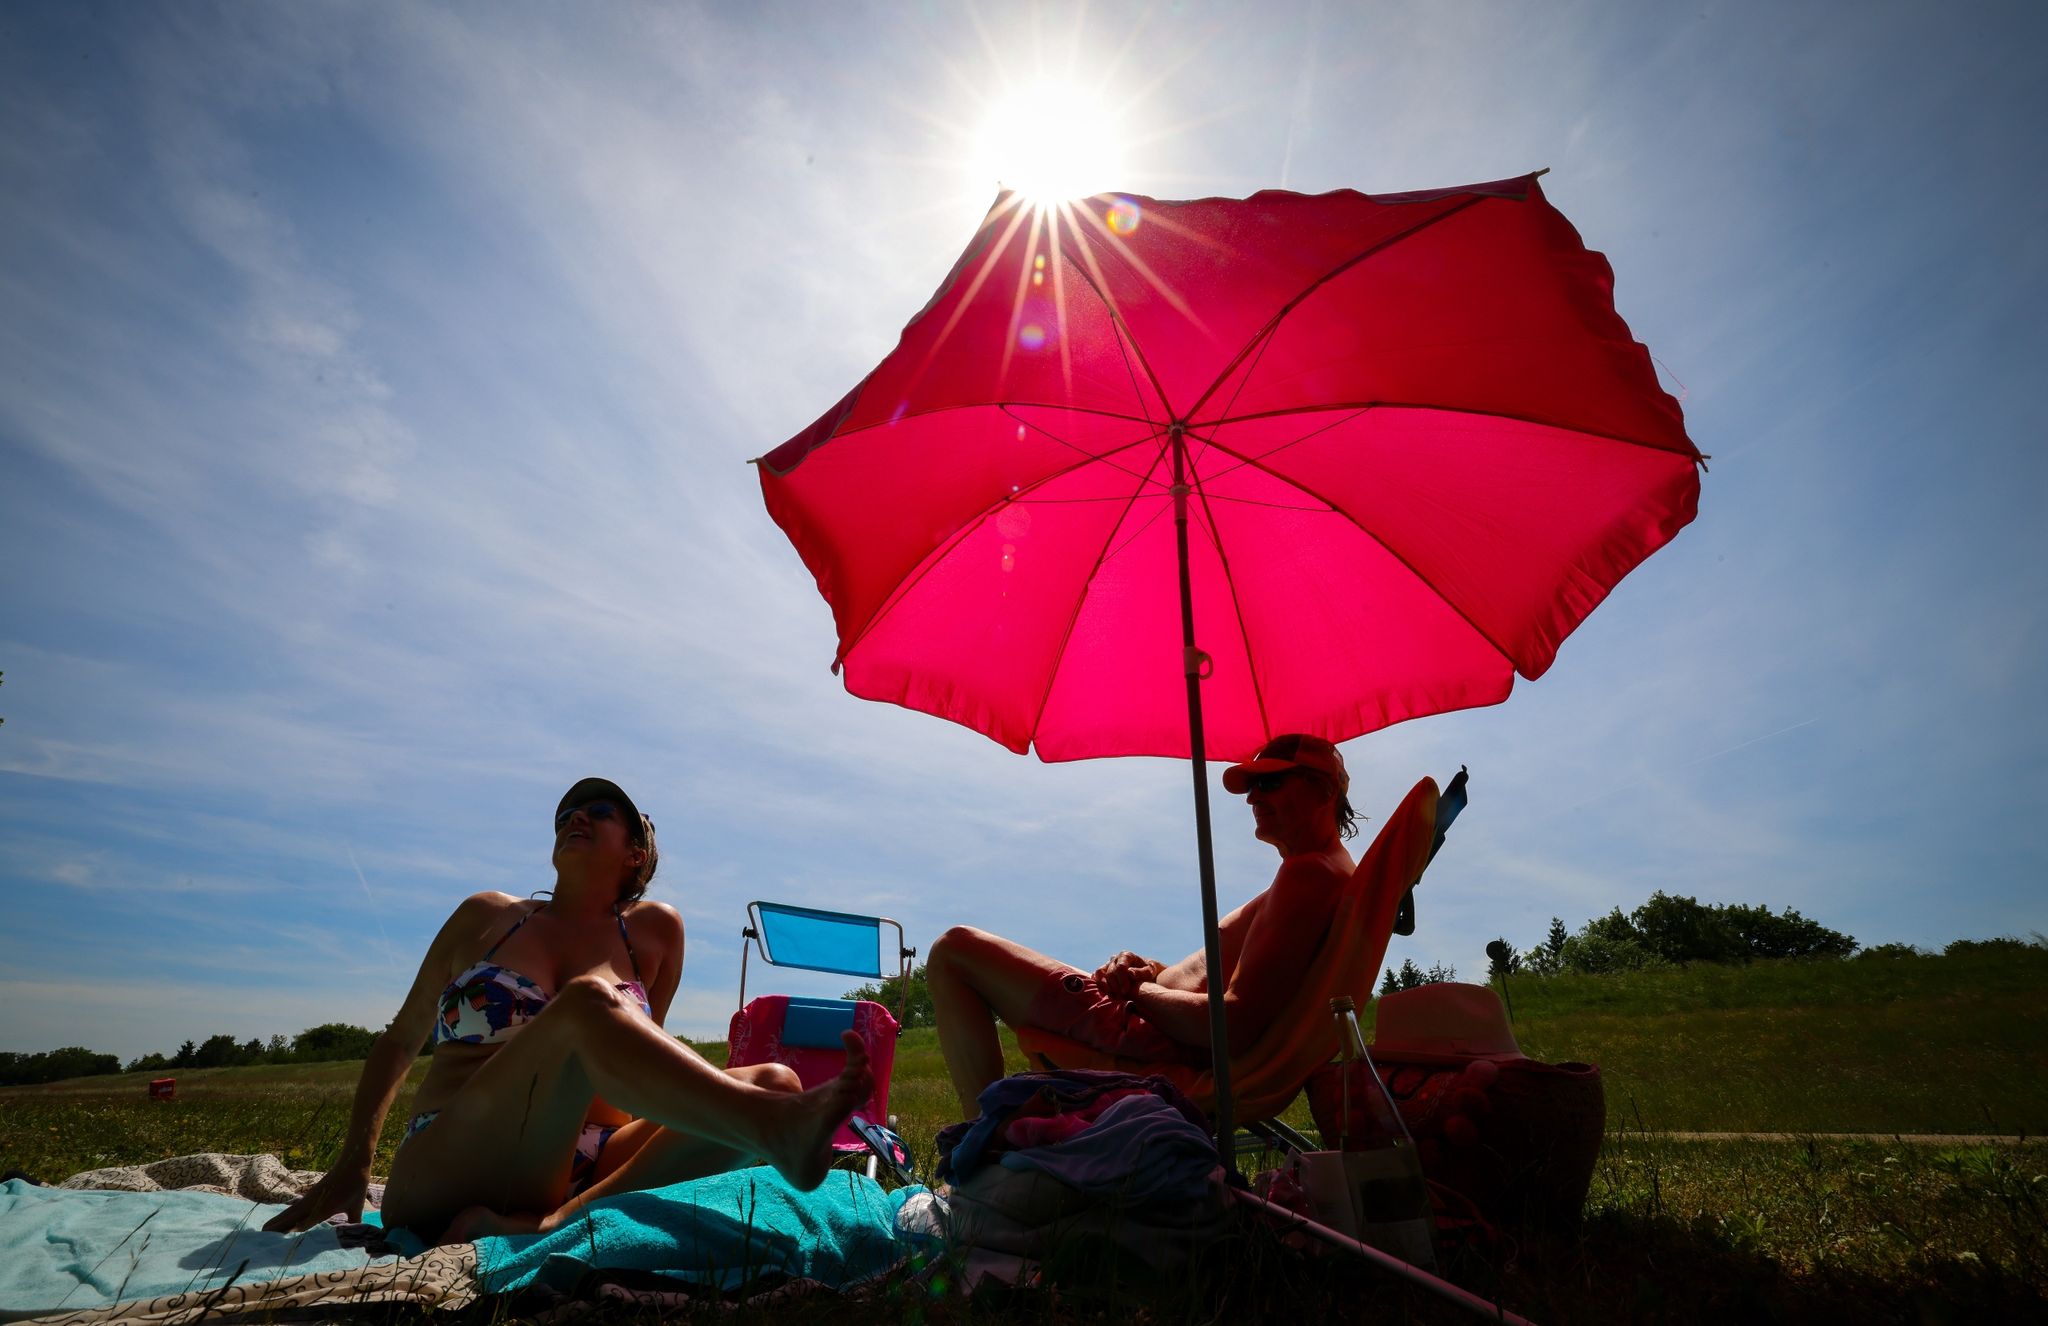 Unter einem pinkfarbenen Sonnenschirm genießen zwei Menschen den sonnigen Tag.